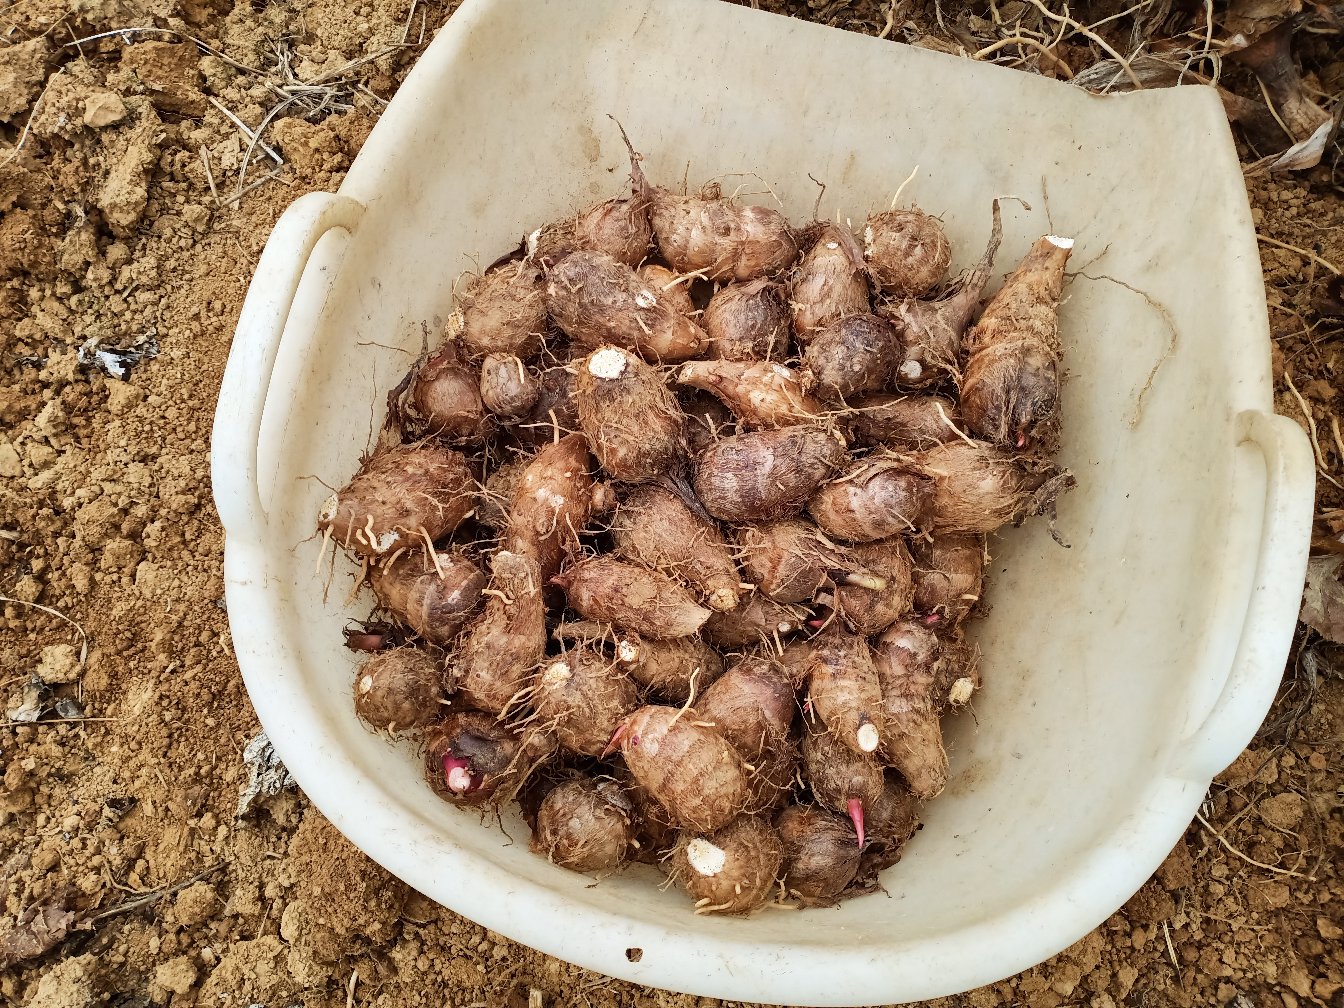 红芽芋头高产种植技术图片